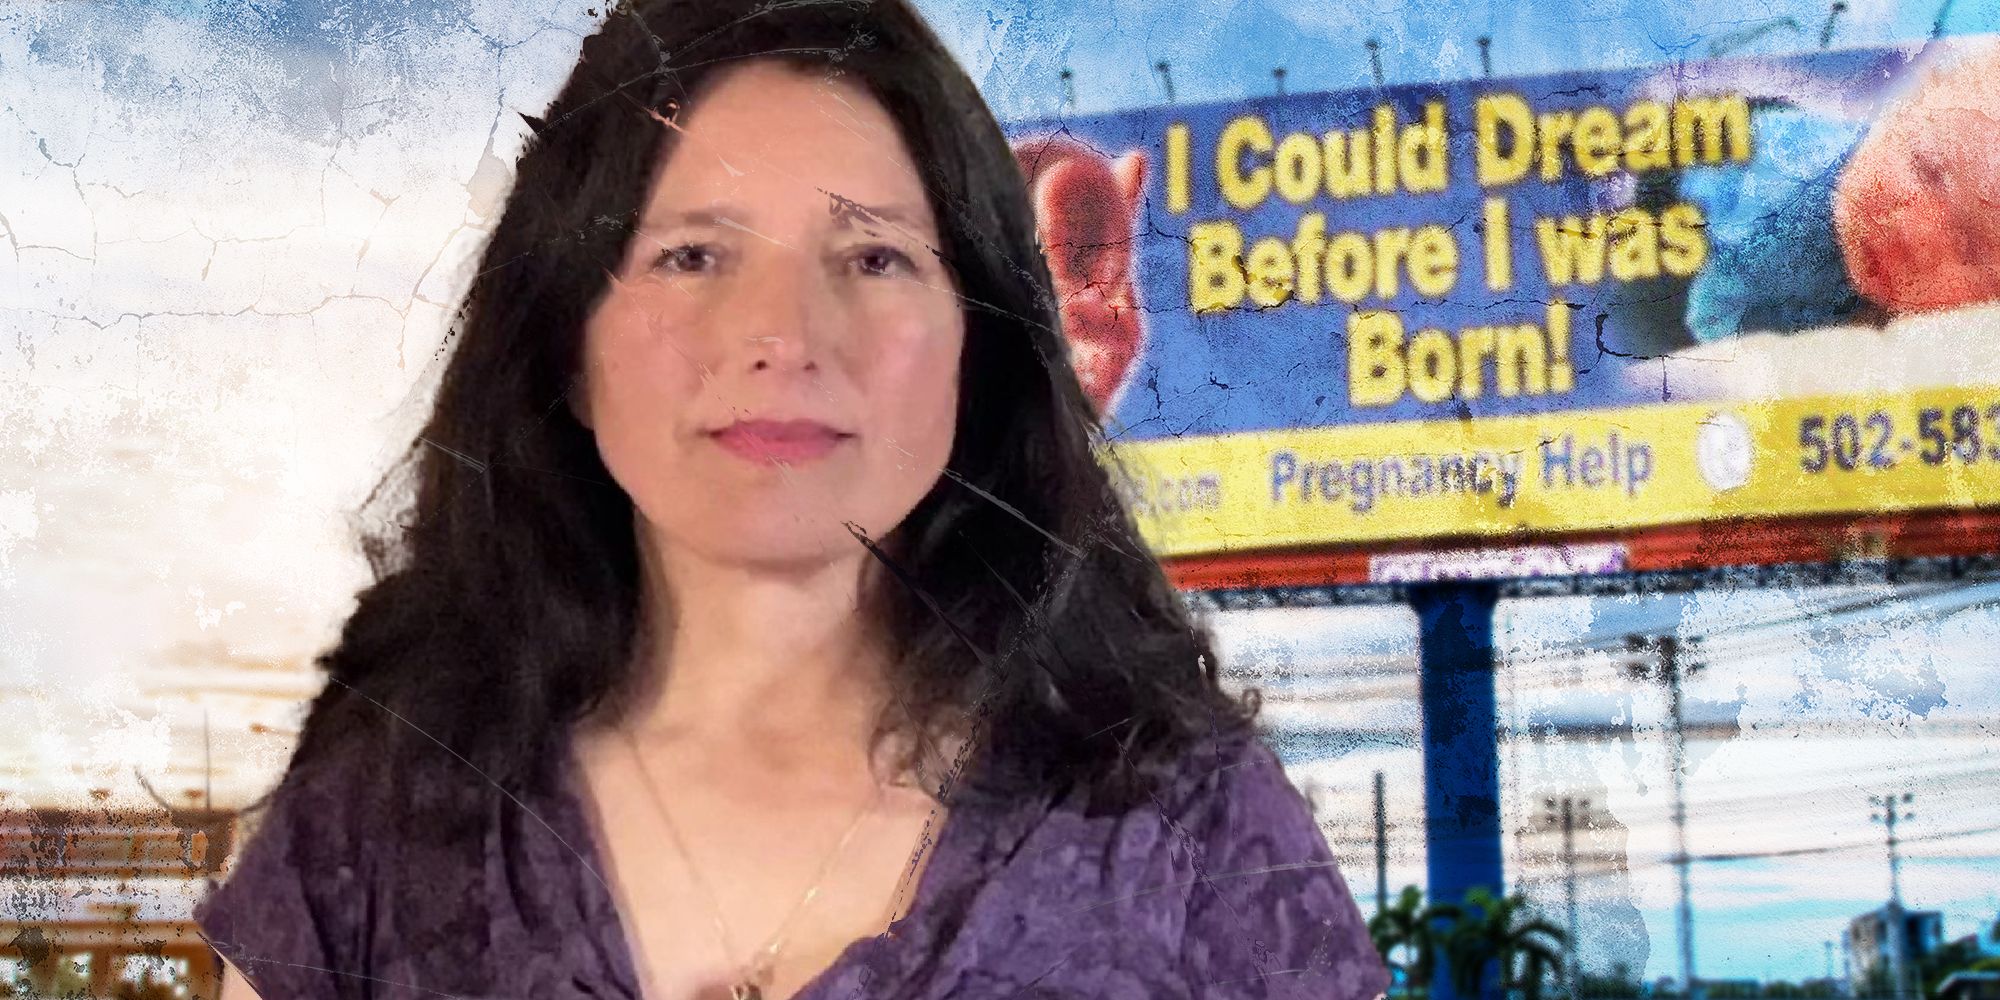 bayonetta abortion billboard